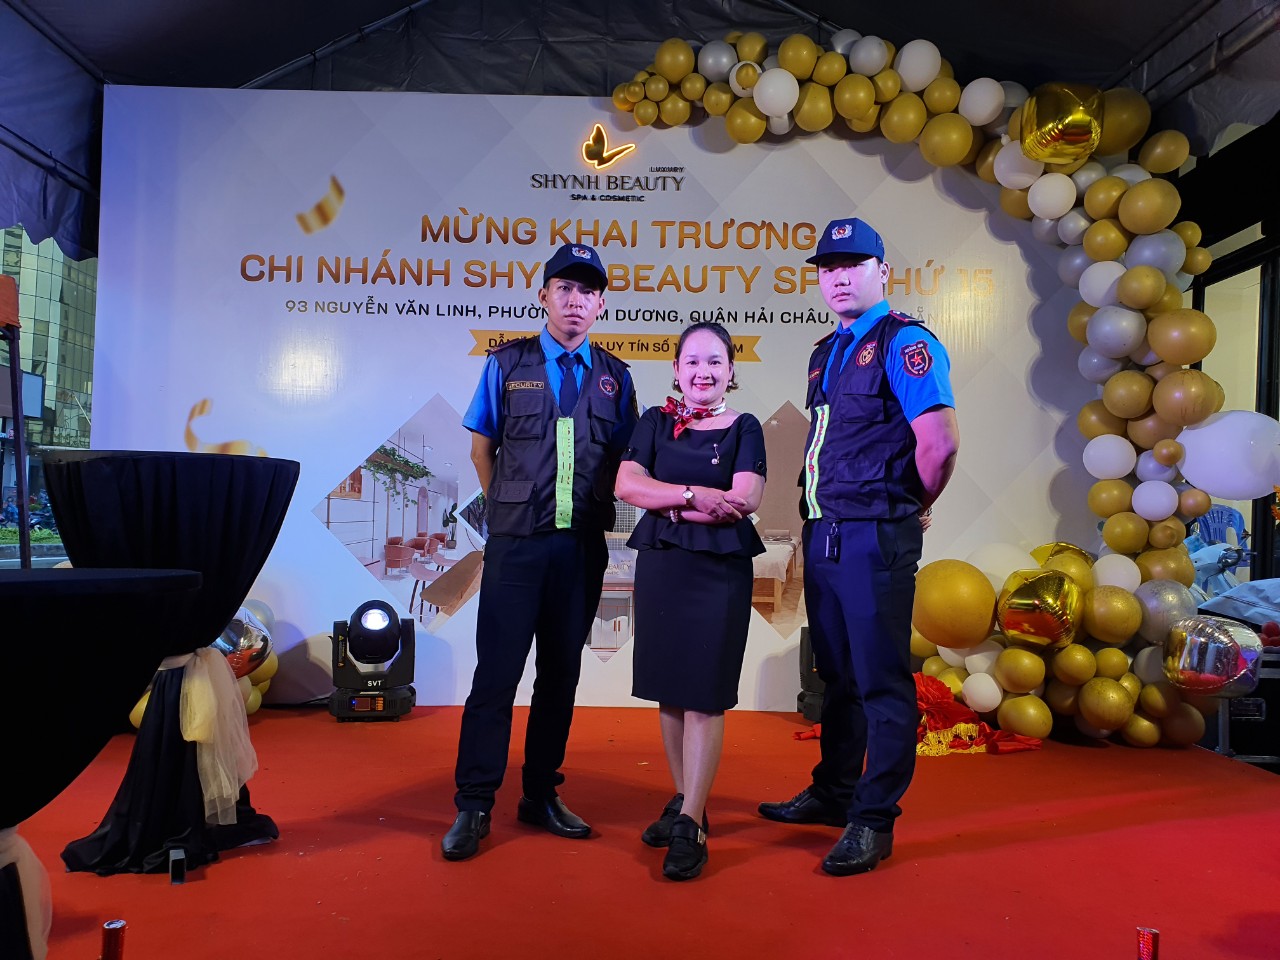 Tầm quan trọng của dịch vụ bảo vệ sự kiện tại Đà Nẵng